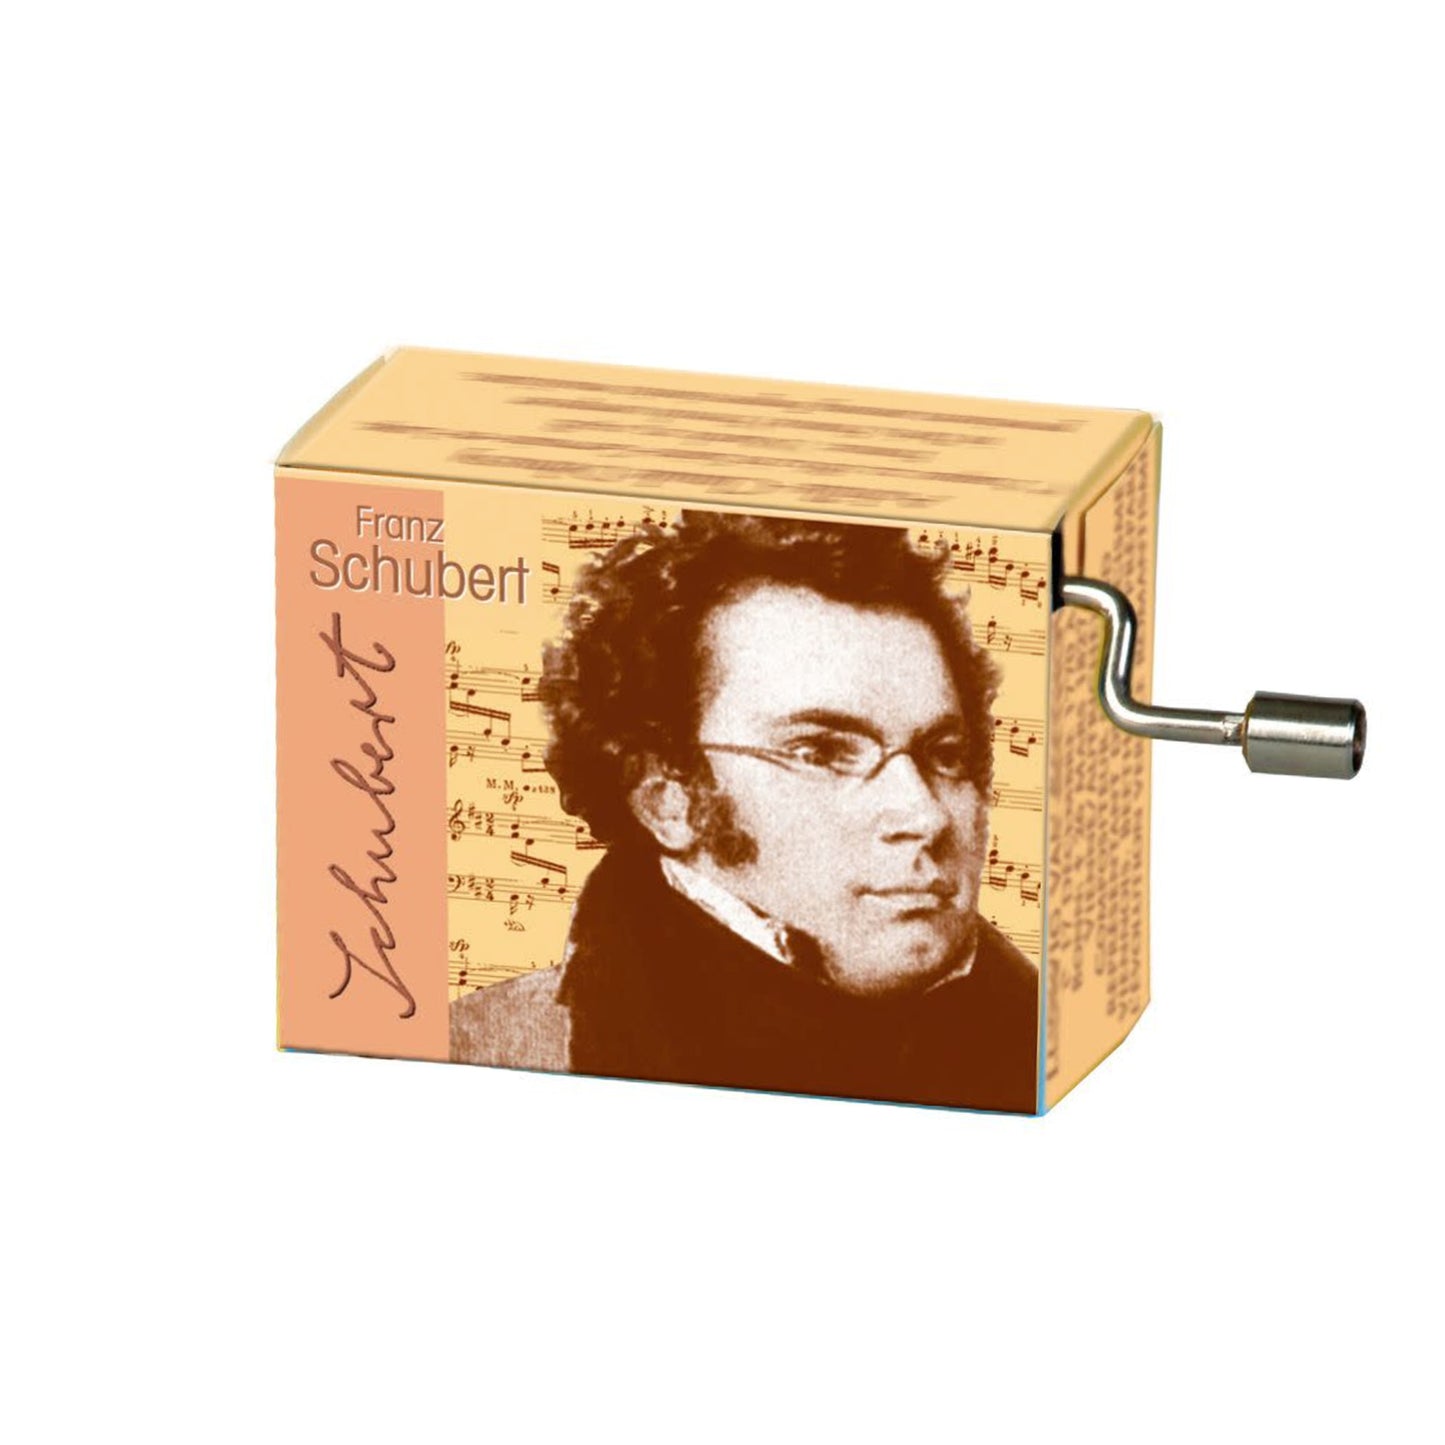 Franz Schubert, Ave Maria Music Box